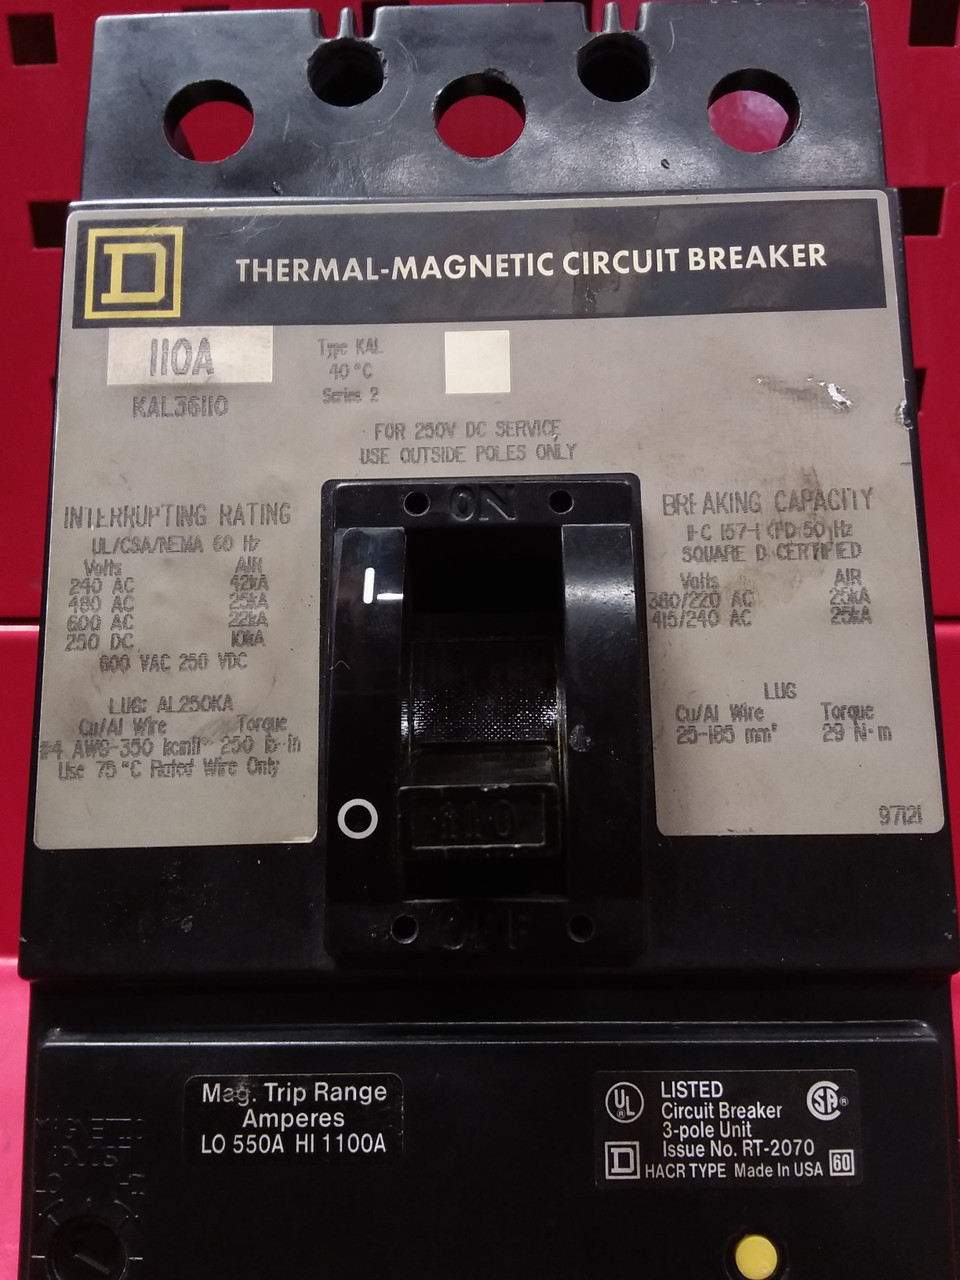 Square D Thermal Magnetic Circuit Breaker KAL36110 